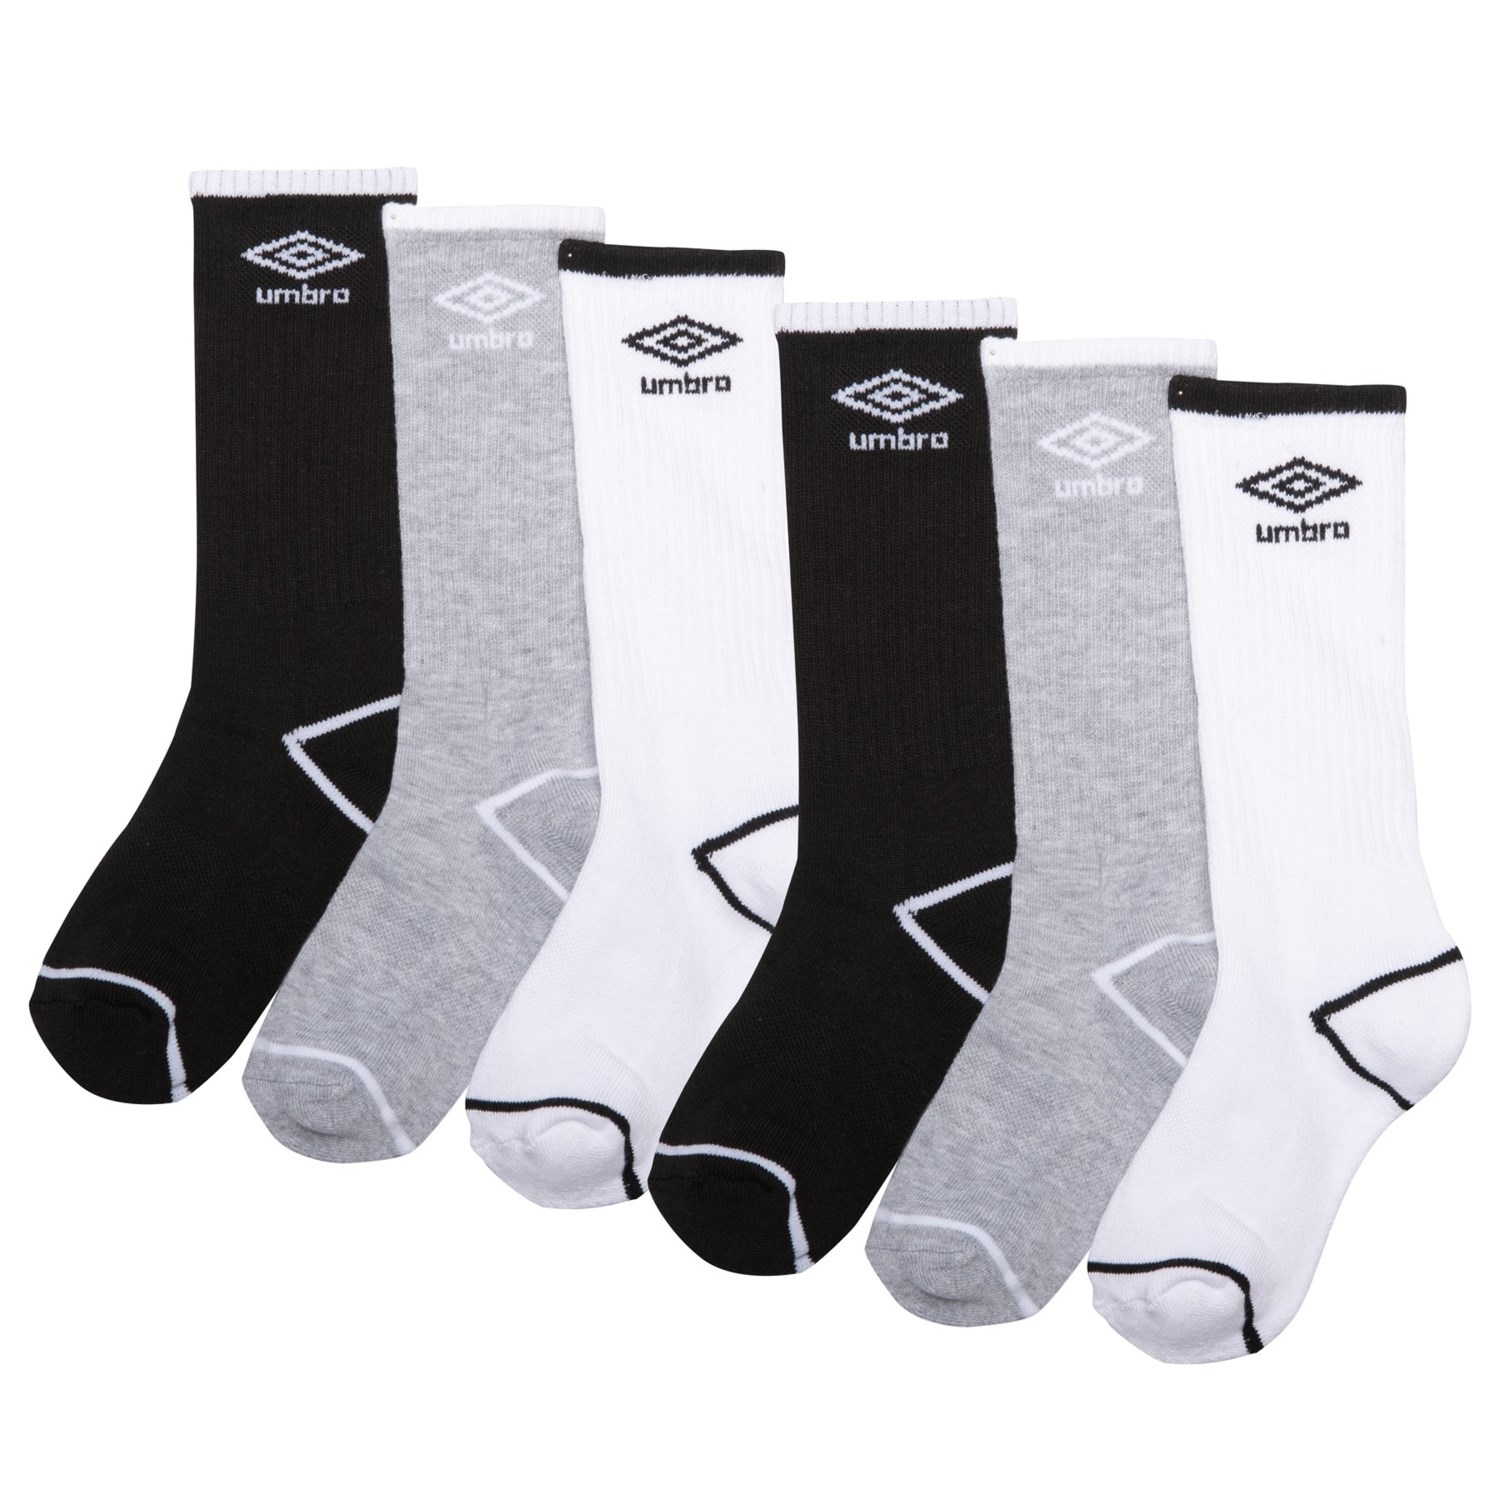 Umbro Logo Core Socks- 6-Pack, Crew (For Boys) - Save 30%